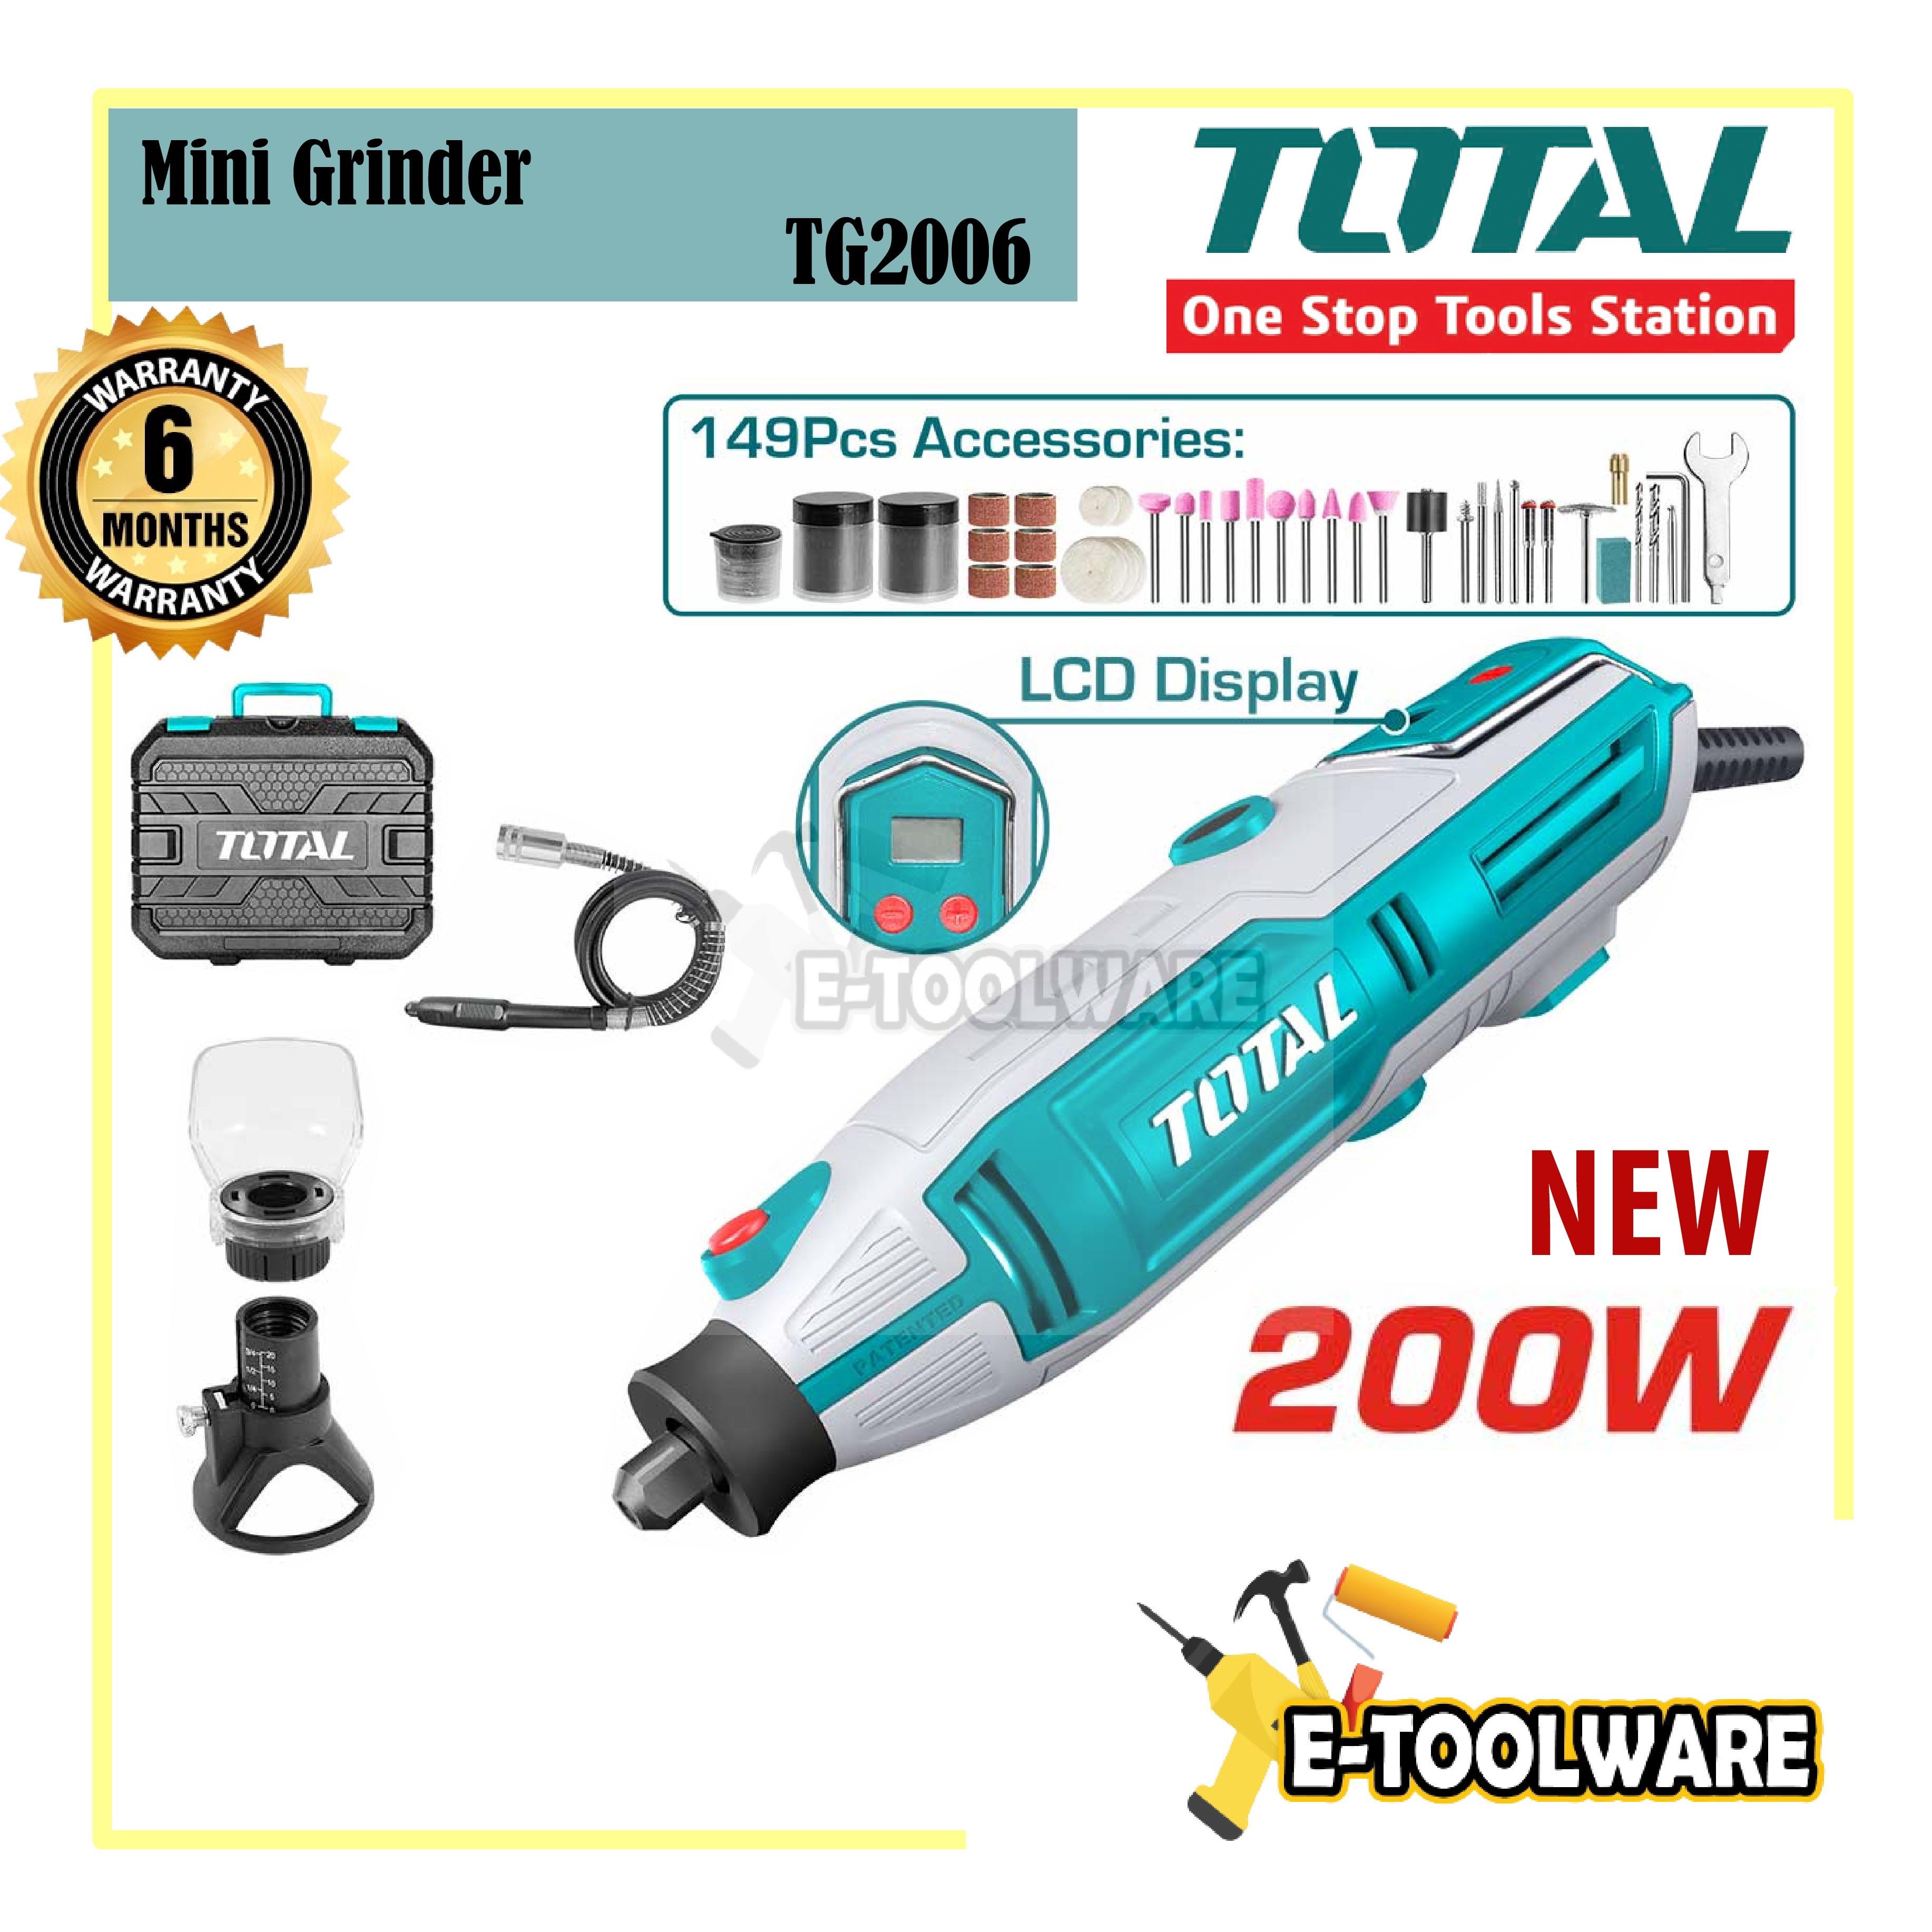 Total Mini Grinder -130w